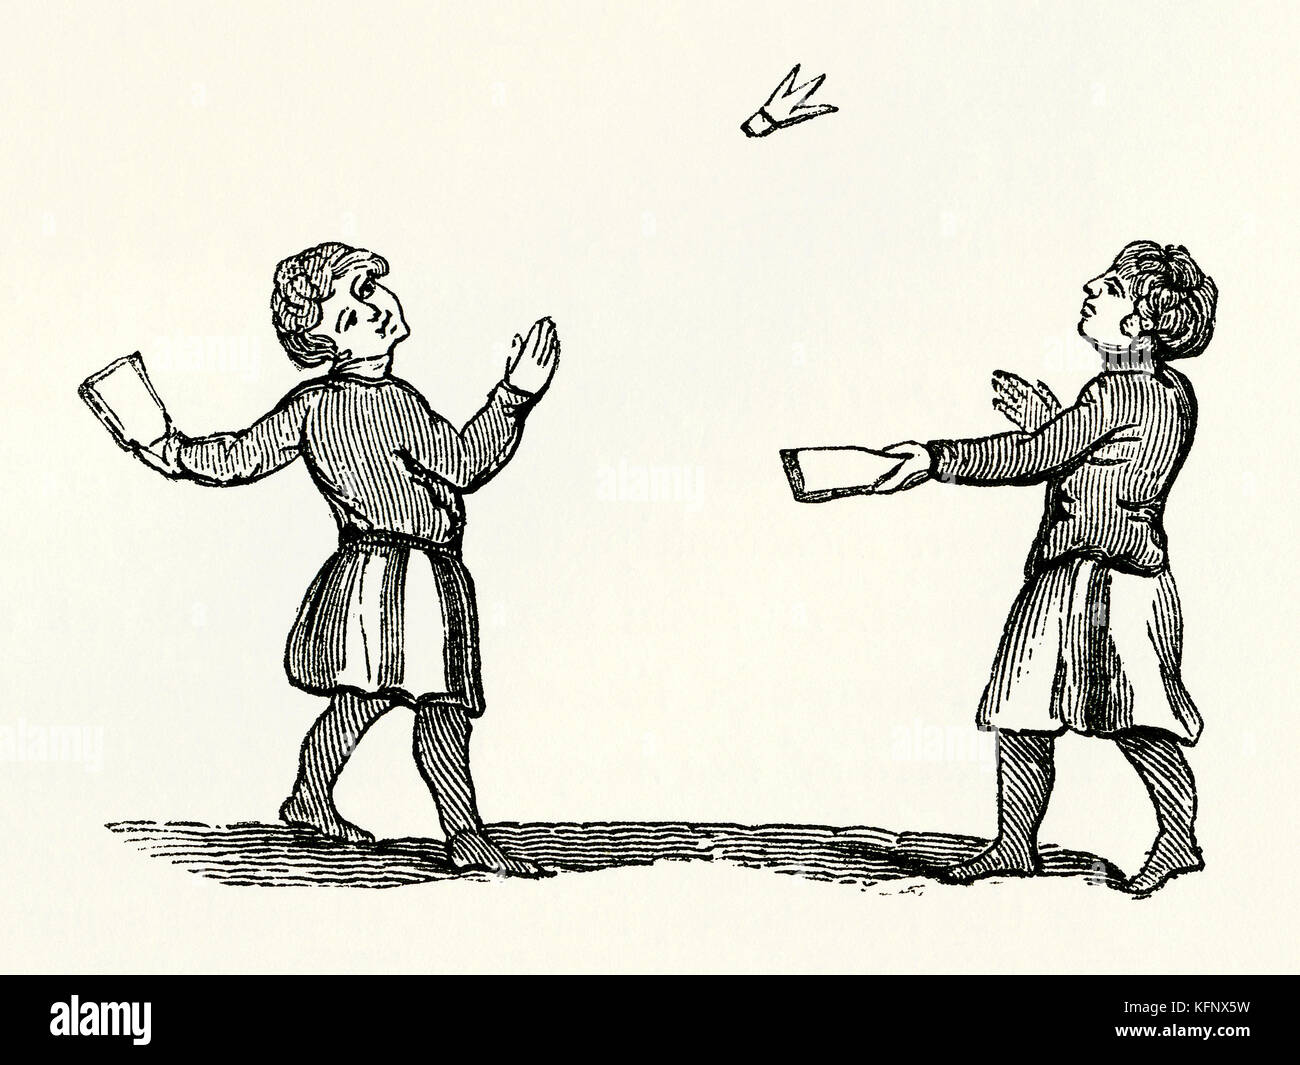 Une ancienne gravure médiévale de battledore et volant, ou jeu de volant, un jeu ancien lié au badminton moderne Banque D'Images